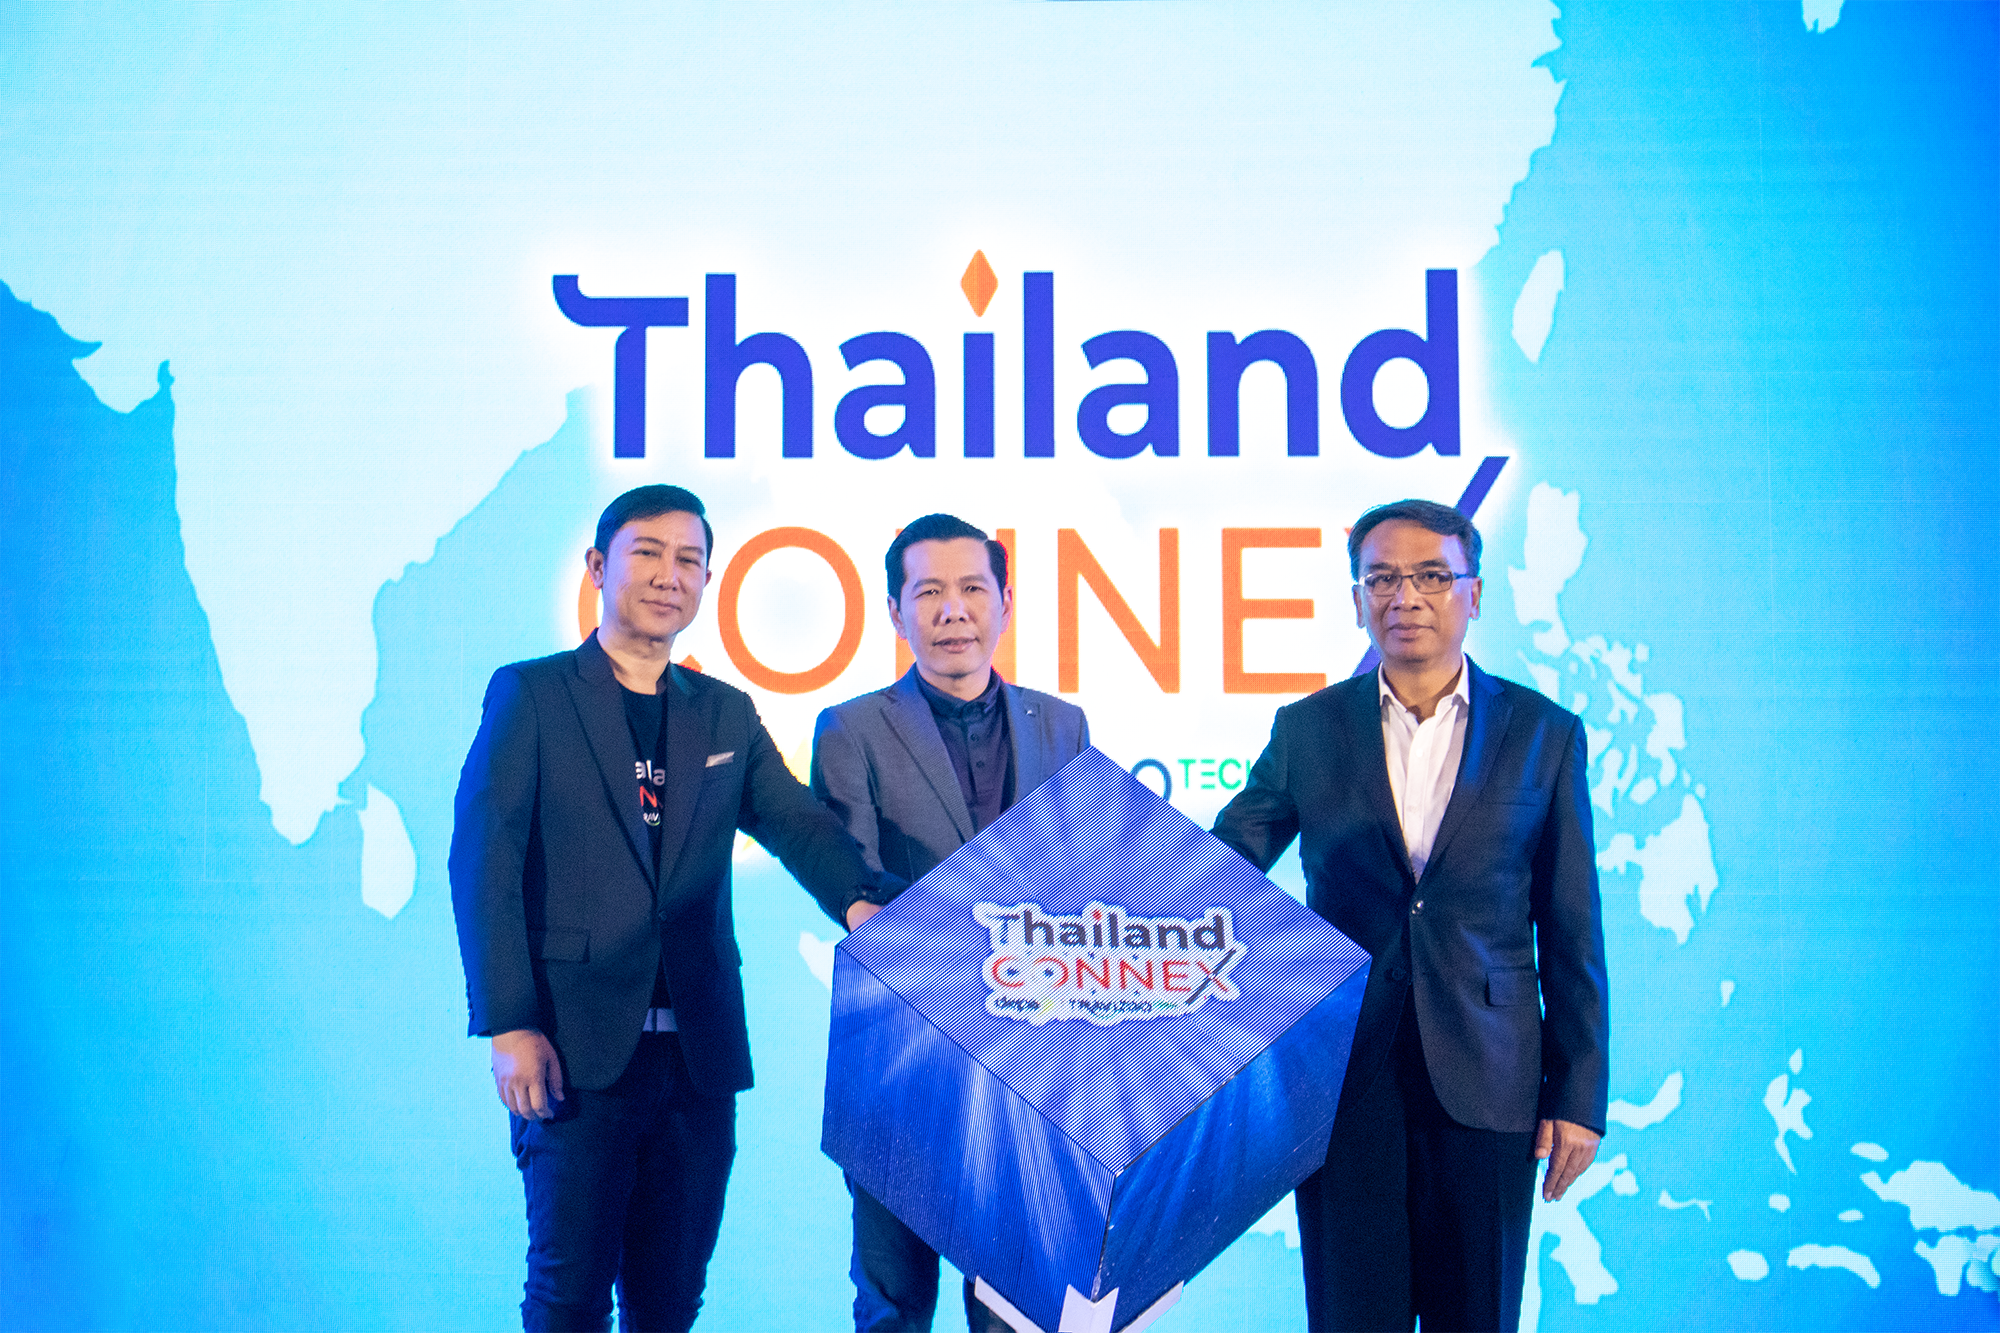 ThailandCONNEX ร่วมกับจังหวัดภูเก็ต รุกตลาดการท่องเที่ยวภาคใต้